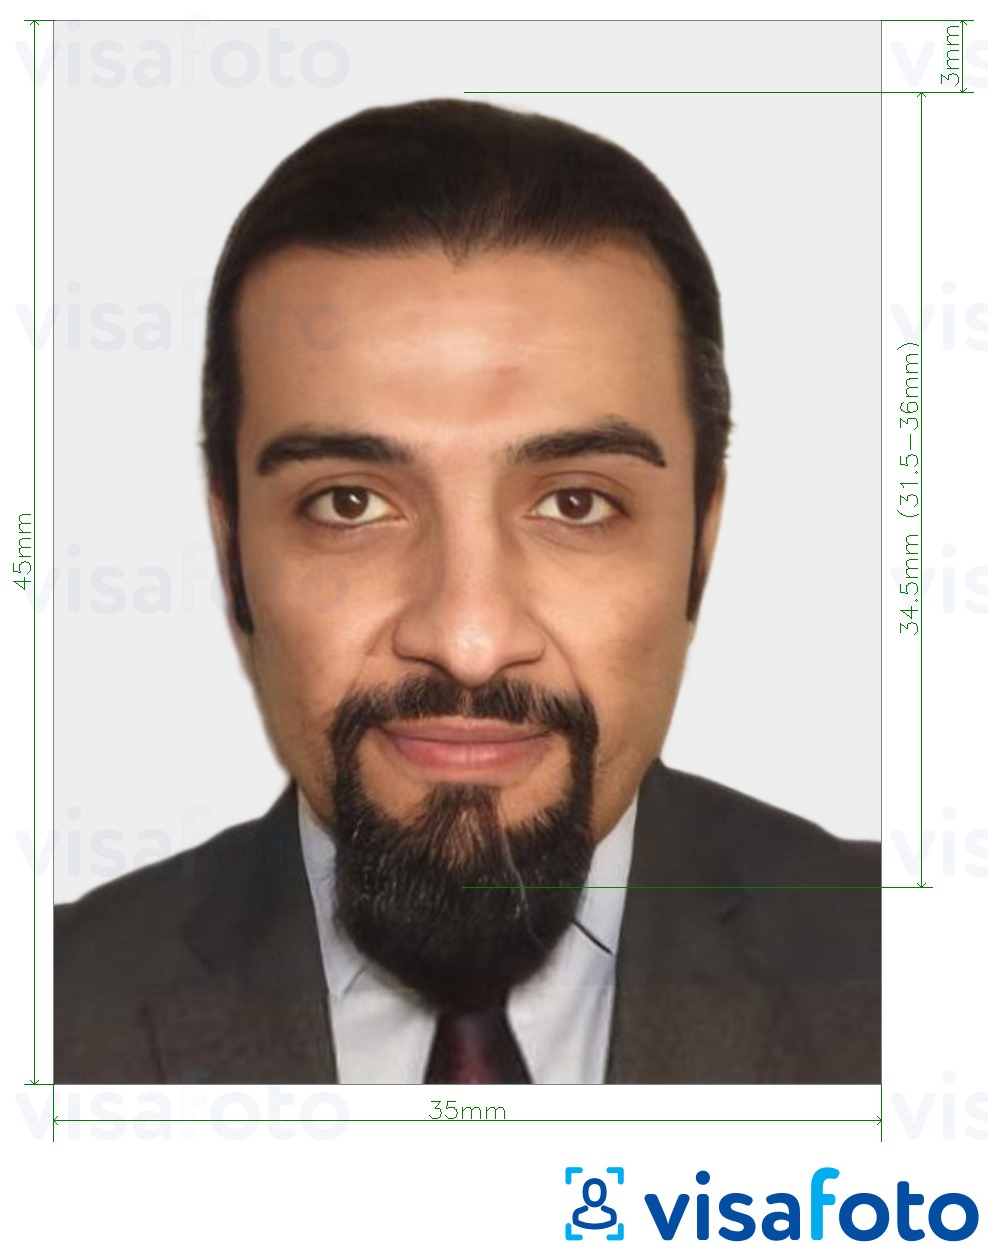 Primjer fotografije za Mauritanska viza 35x45 mm (3,5x4,5 cm) s točno određenom veličinom